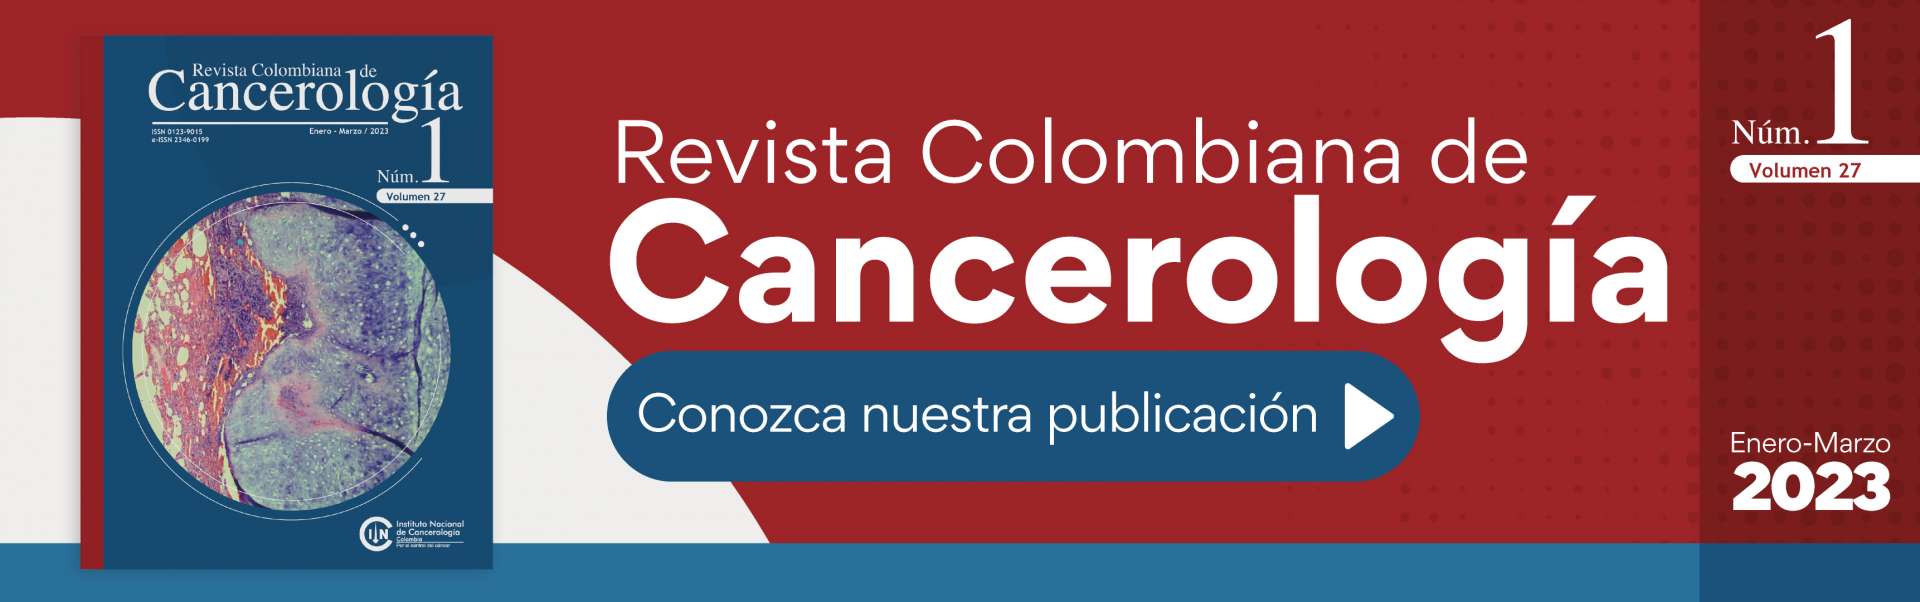 Imagen de Revista Colombiana de Cancerología Vol 27